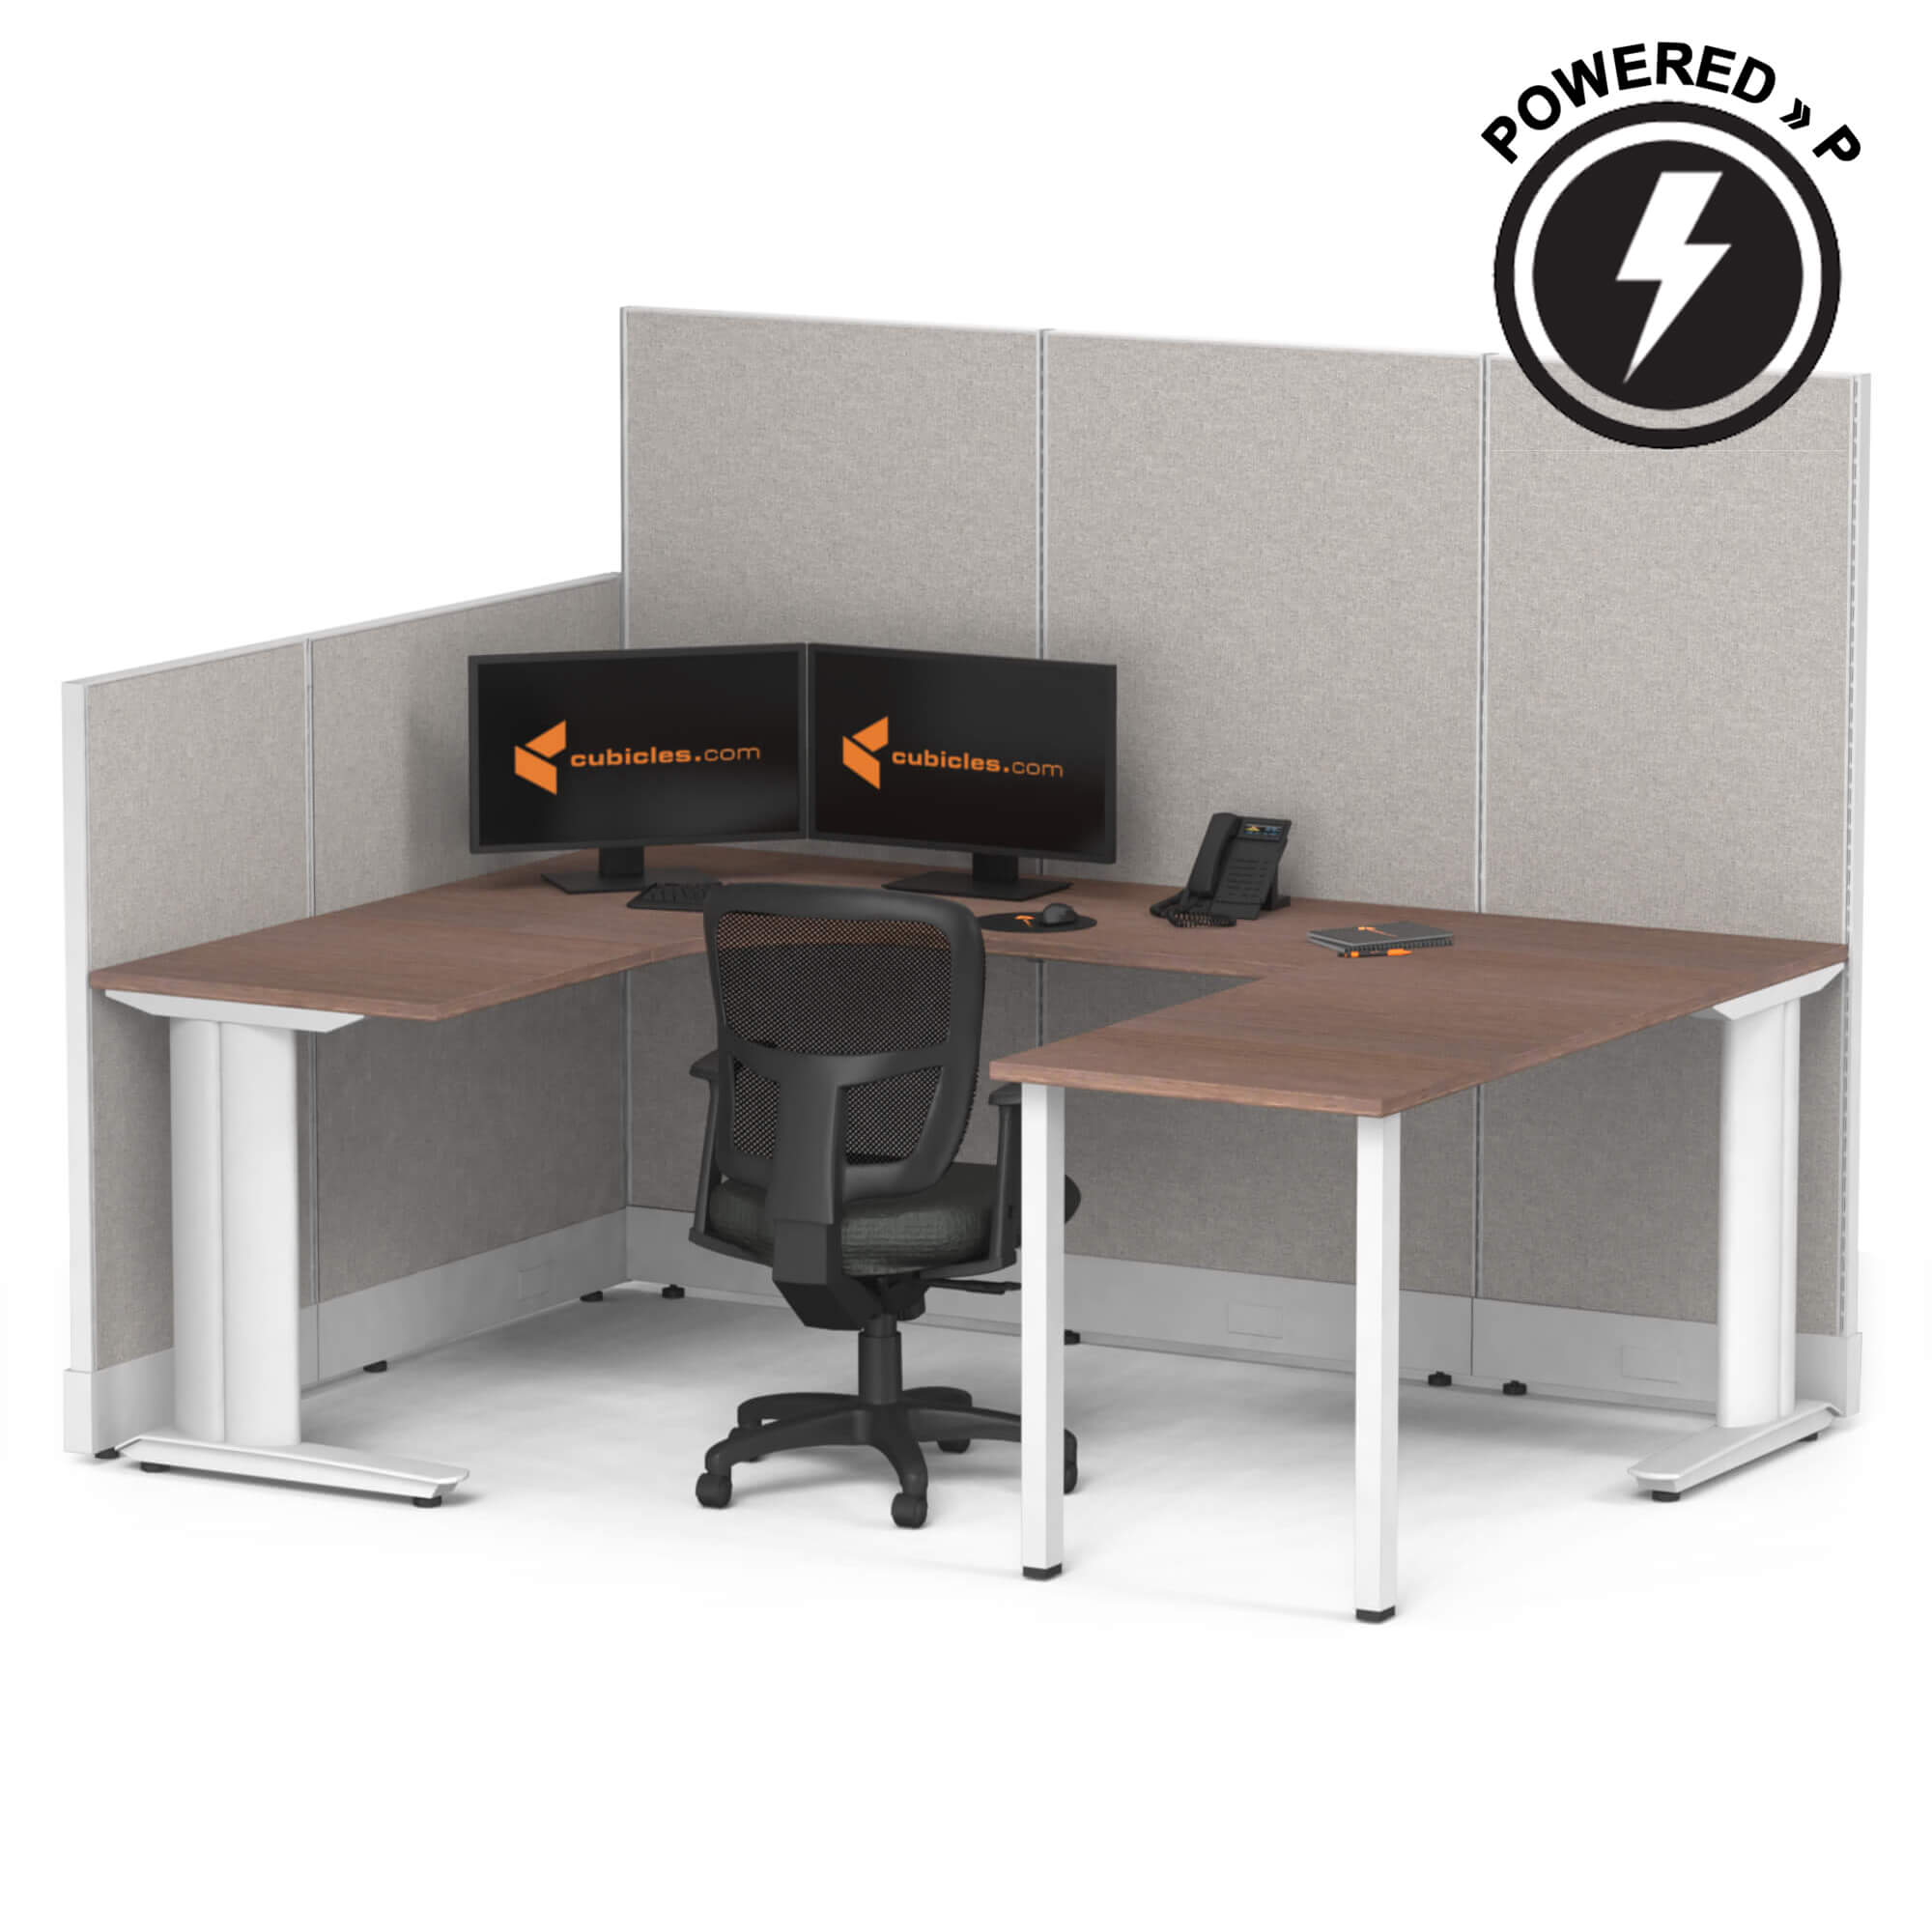 cubicle-desk-u-shaped-workstation-powered-sign.jpg